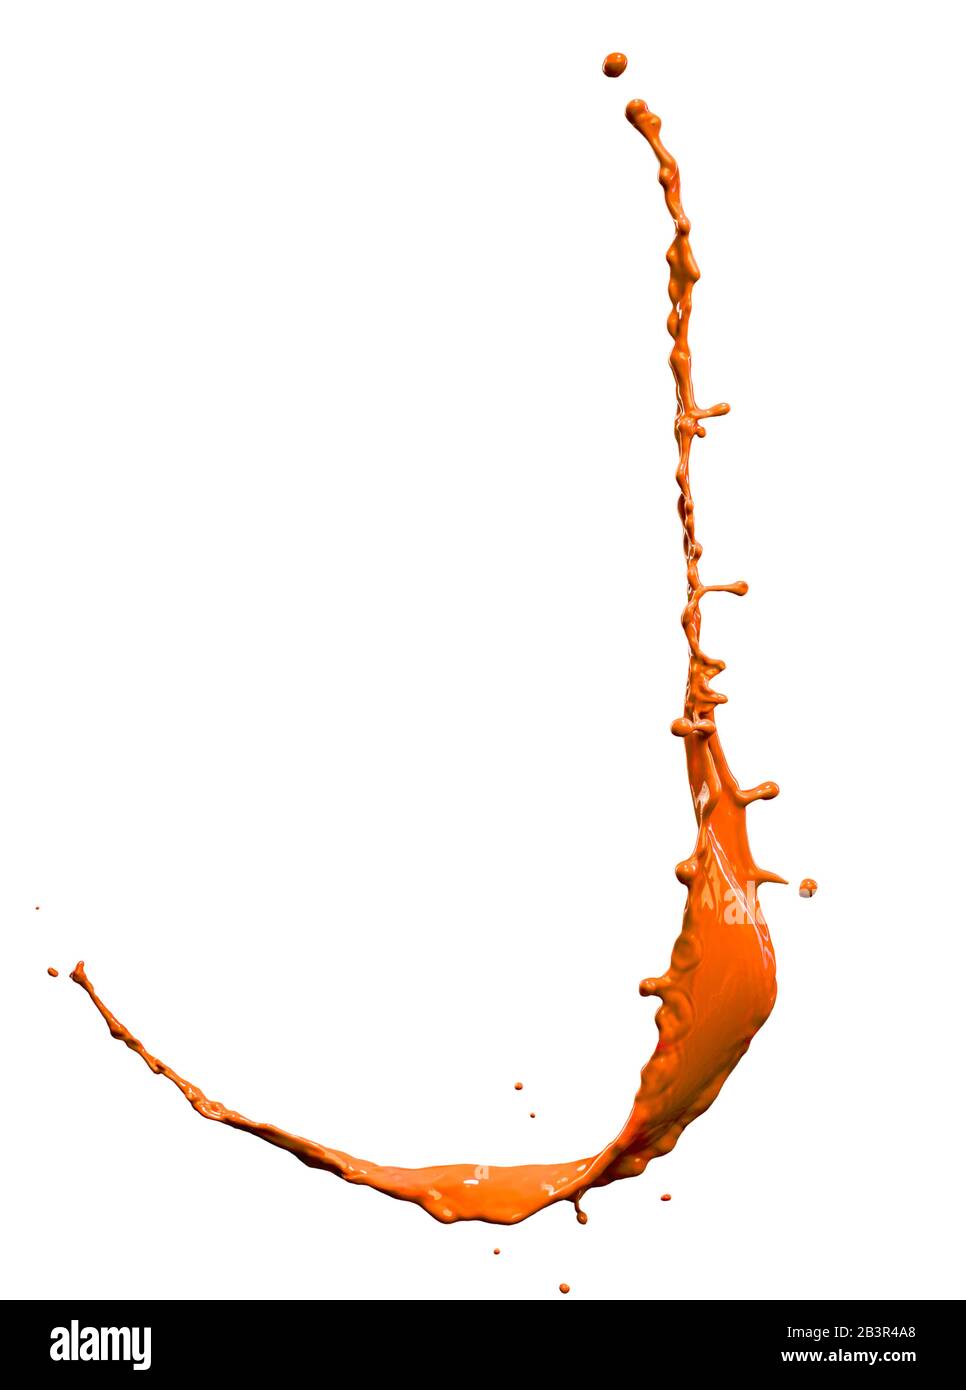 Beautiful orange paint splashes isolated on white background Stock Photo